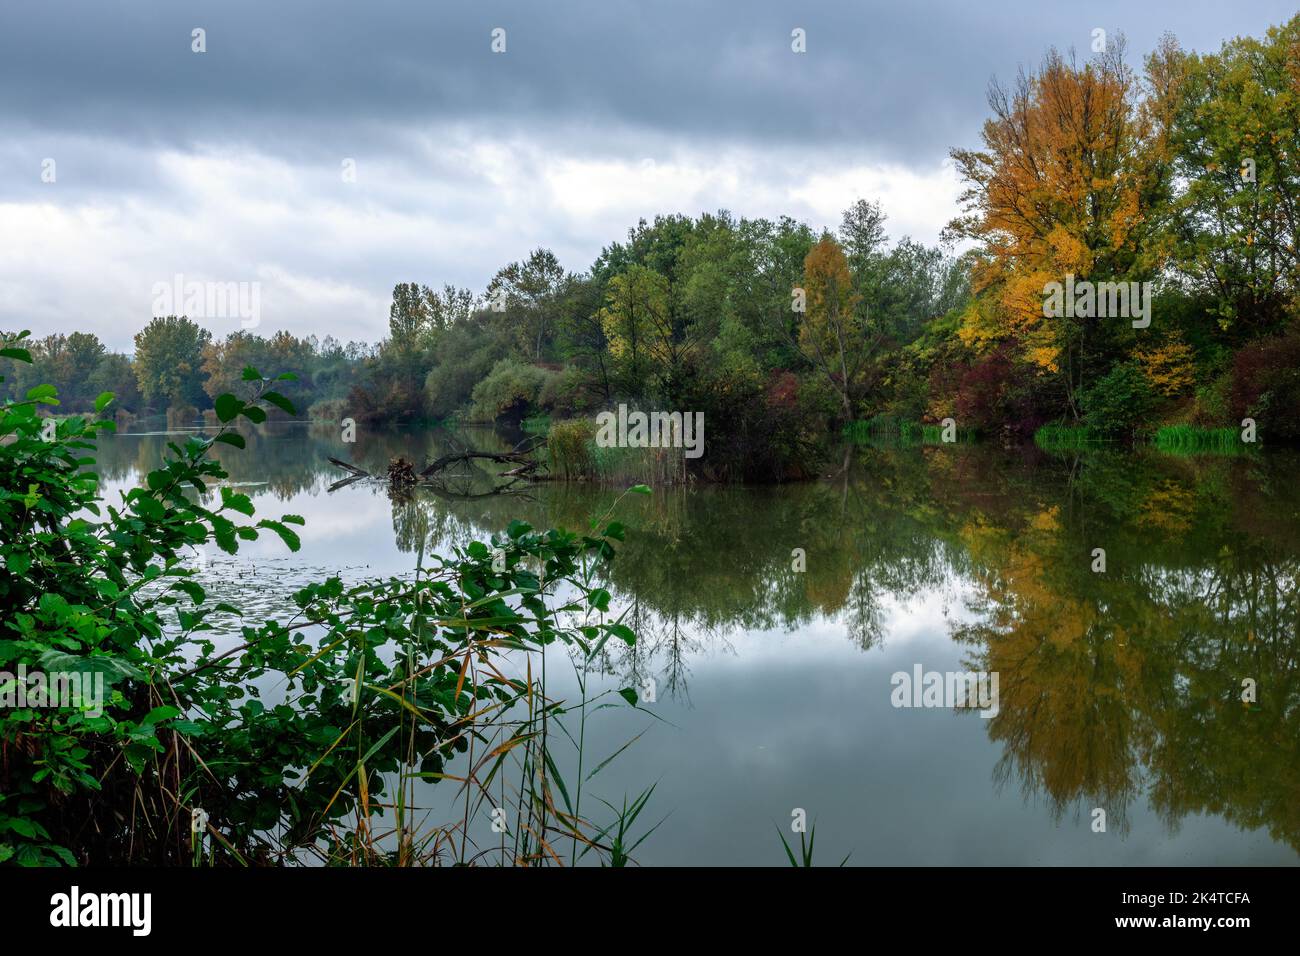 Herbstlandschaft, schöne bunte Blätter von Bäumen. See mit ruhiger Wasseroberfläche nach Regen. Spiegelung. Natur Europas. Dubnica, Slowakei. Stockfoto